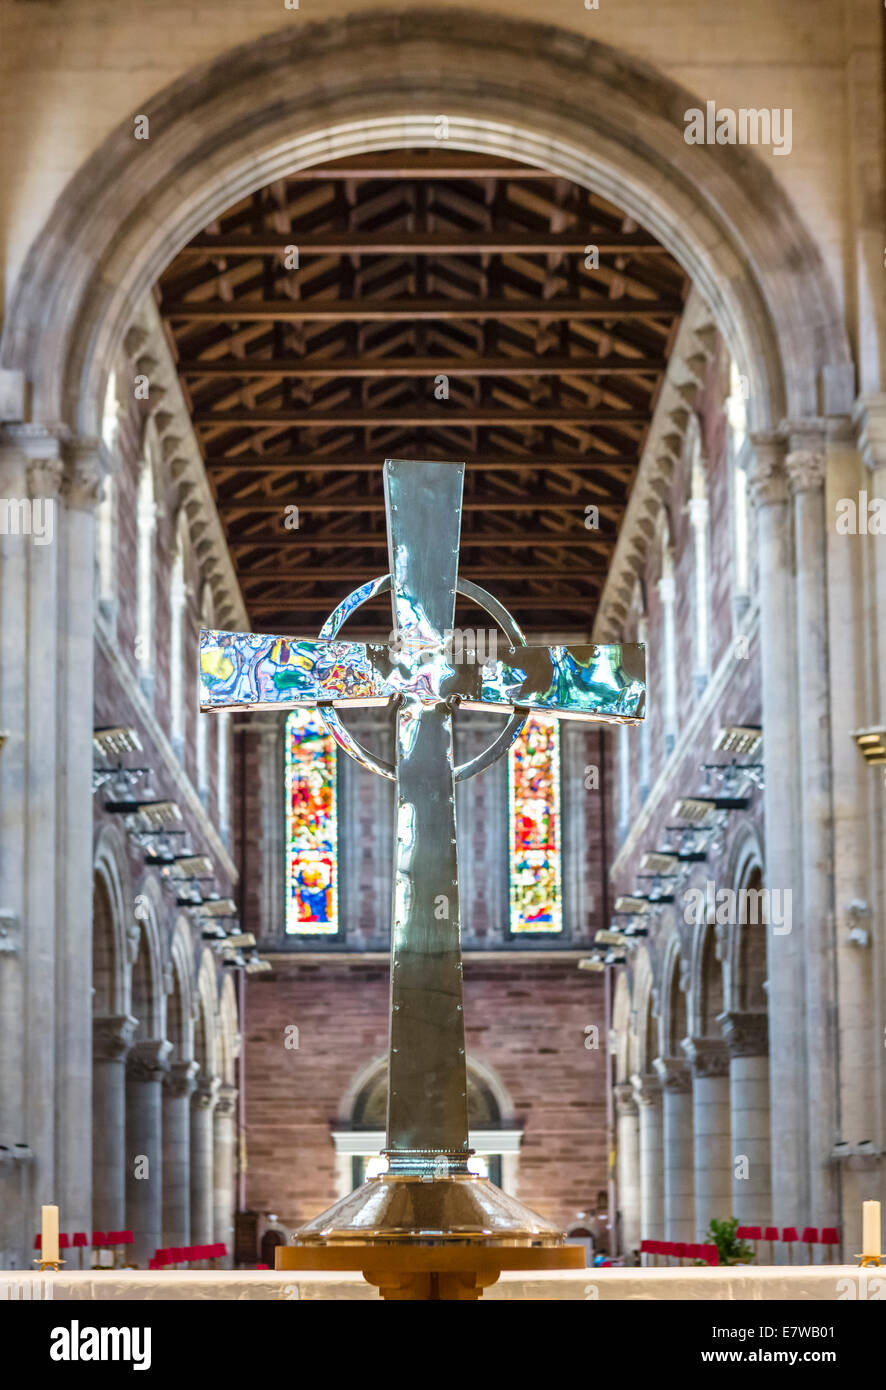 Croix celtique à l'intérieur de la cathédrale St Anne, quartier de la cathédrale, de Belfast, en Irlande du Nord, Royaume-Uni Banque D'Images